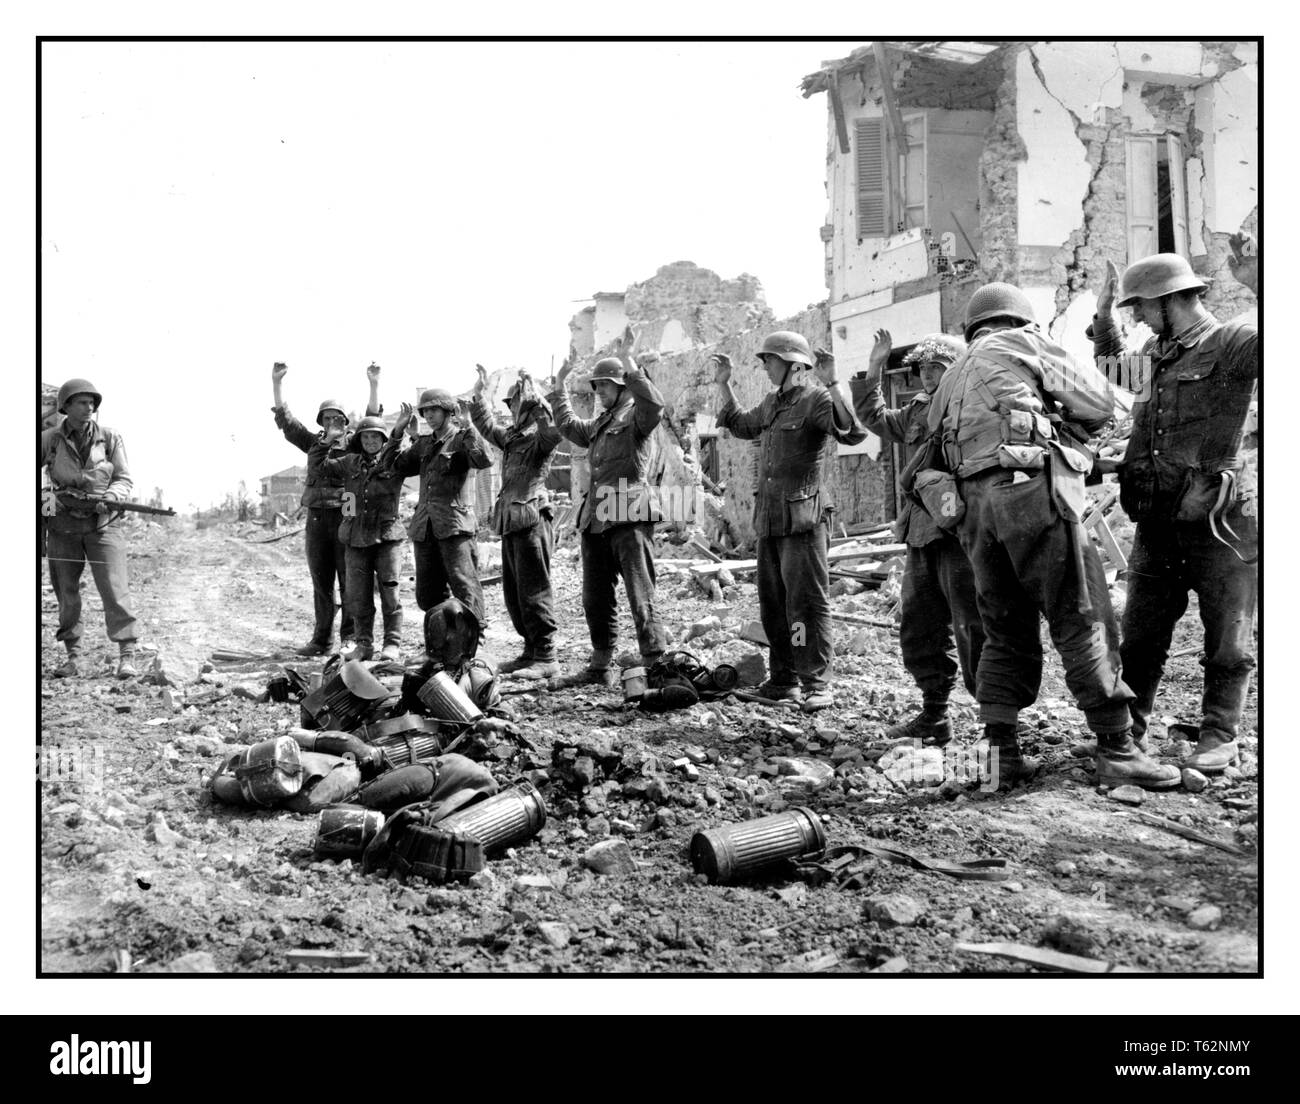 Propagandabild der gefangenen deutschen Truppen, die sich dem US-Militär bei Anzio Italien hingeben. Deutsche Truppen übergeben an amerikanische Truppen die Schlacht von Anzio war eine Schlacht der italienischen Kampagne des Zweiten Weltkriegs, die vom 22. Januar 1944 bis 5. Juni 1944 Zweiten Weltkrieg stattfand Stockfoto